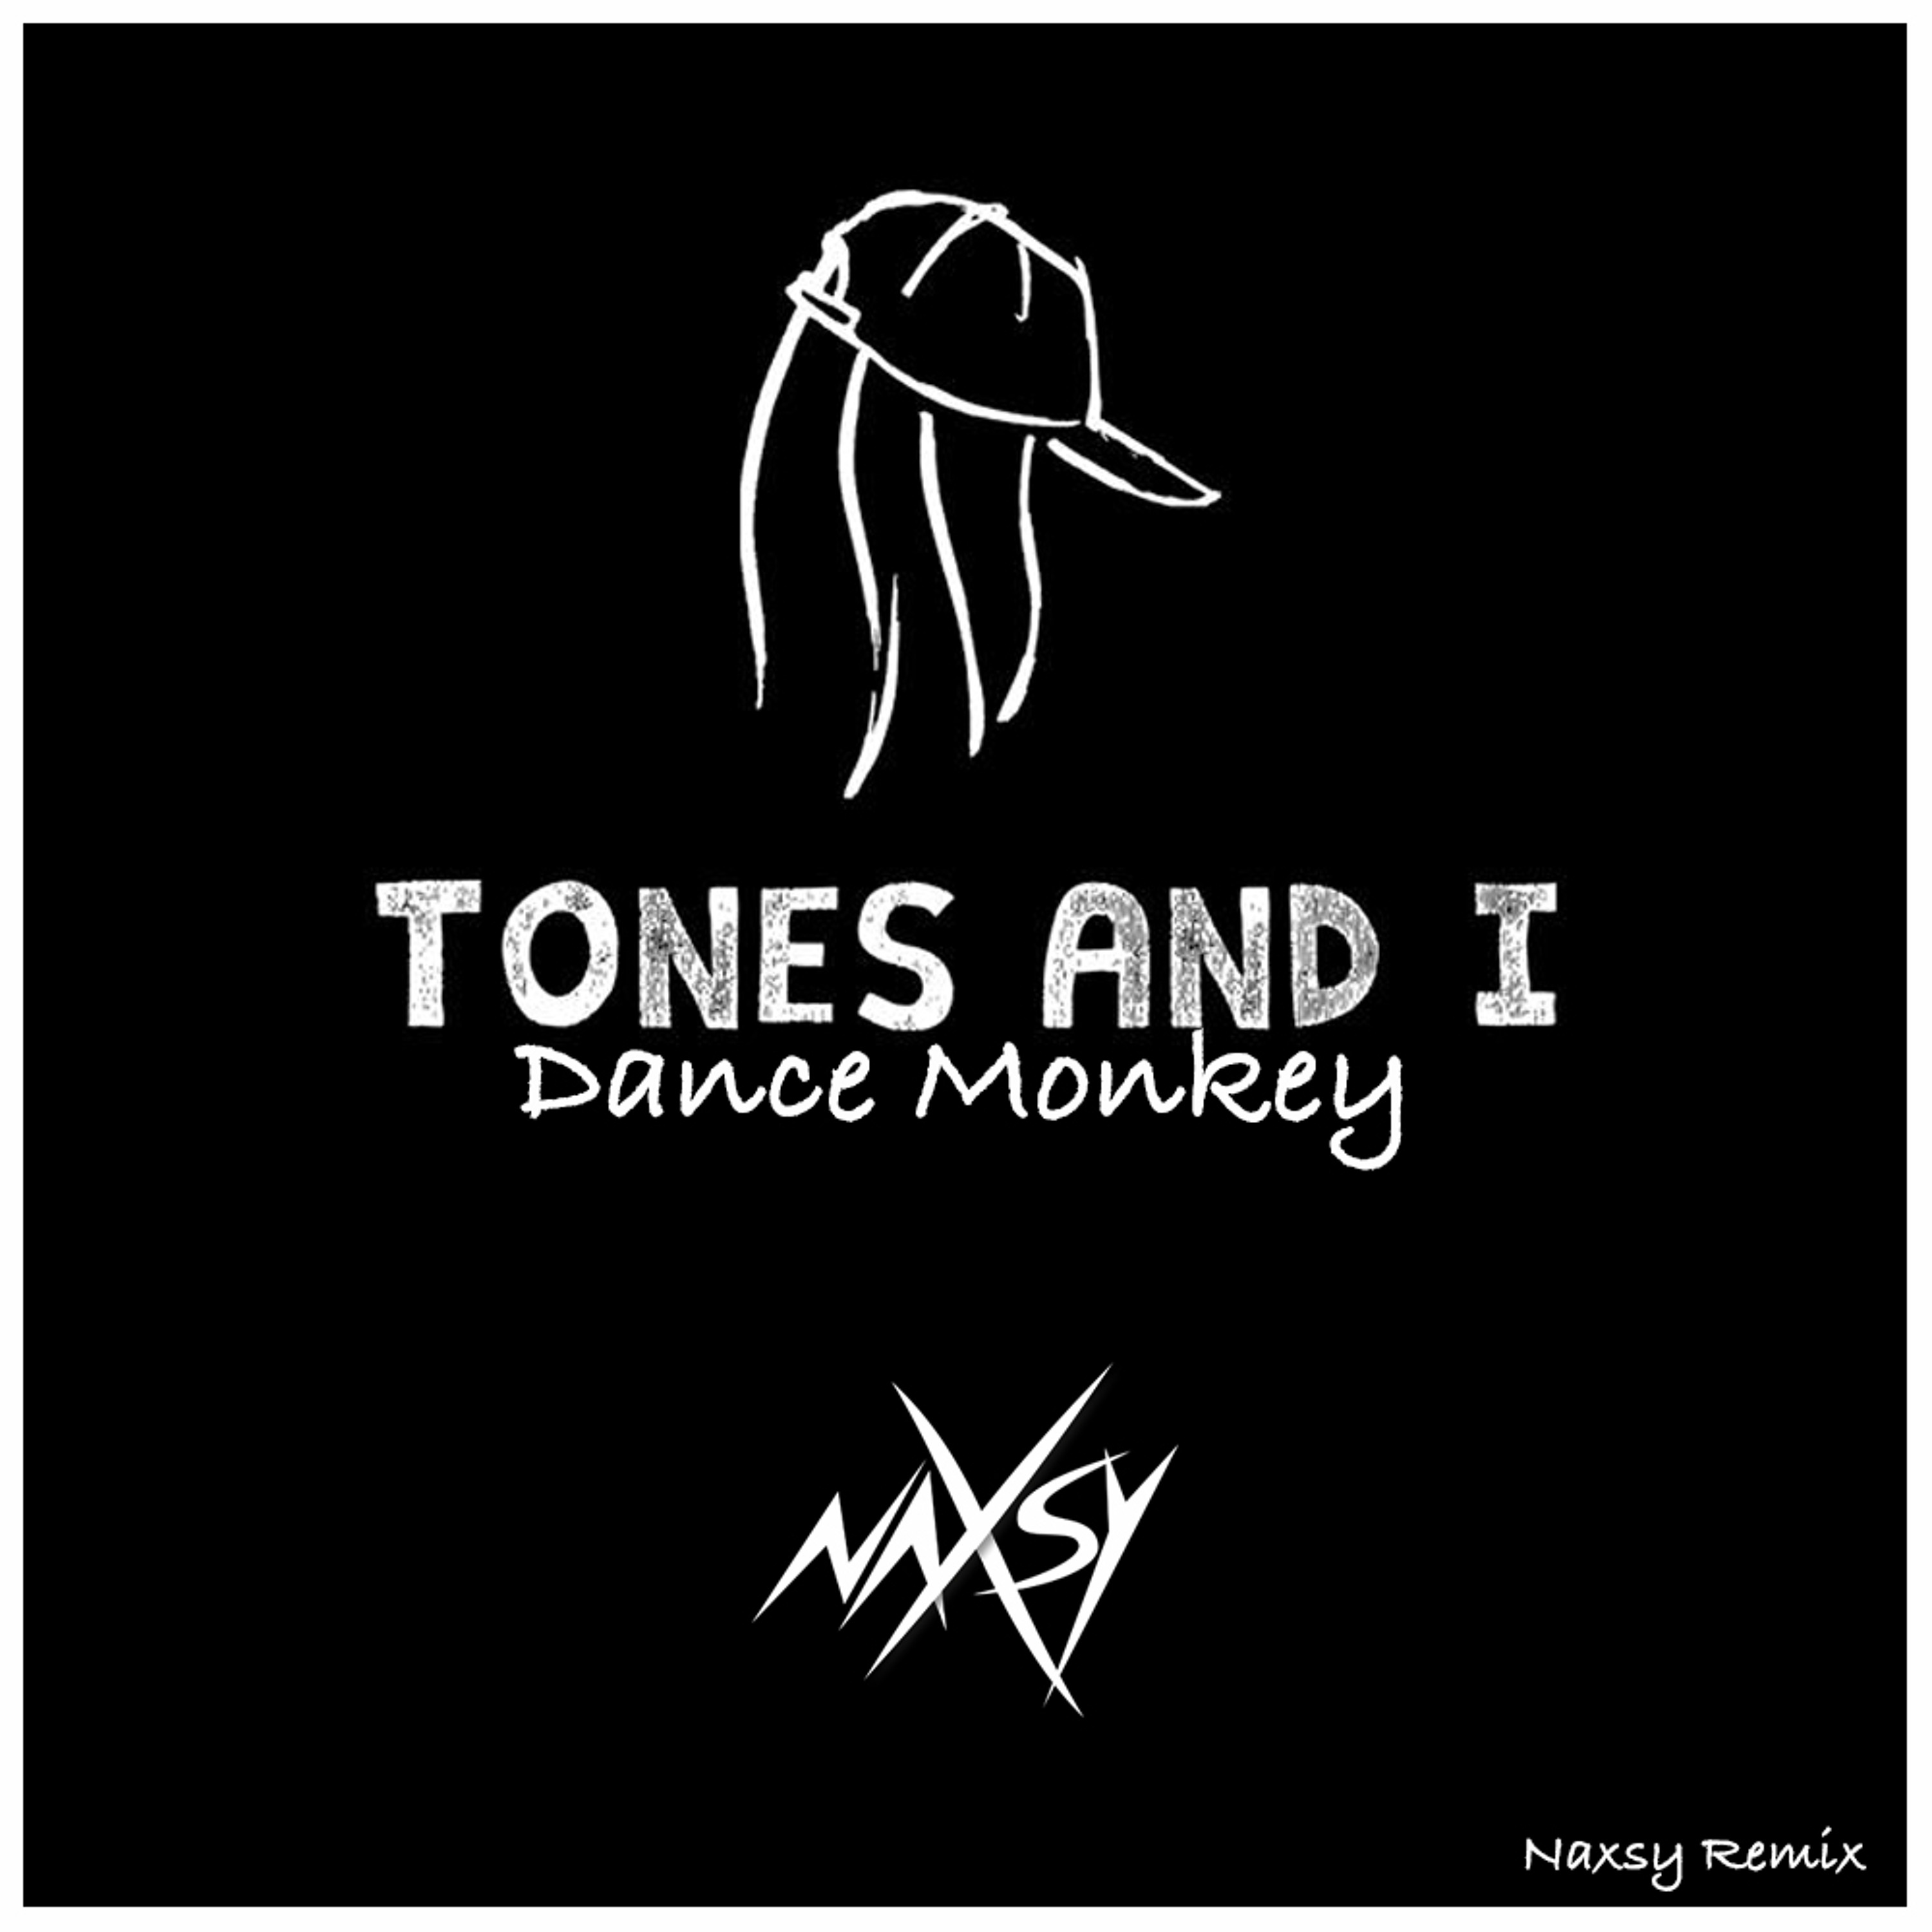 Tones and i песни. Tones Dance Monkey. Tones and i Dance Monkey обложка. ТОНЕС энд данс МОНКЕЙ. Tones and i Dance.